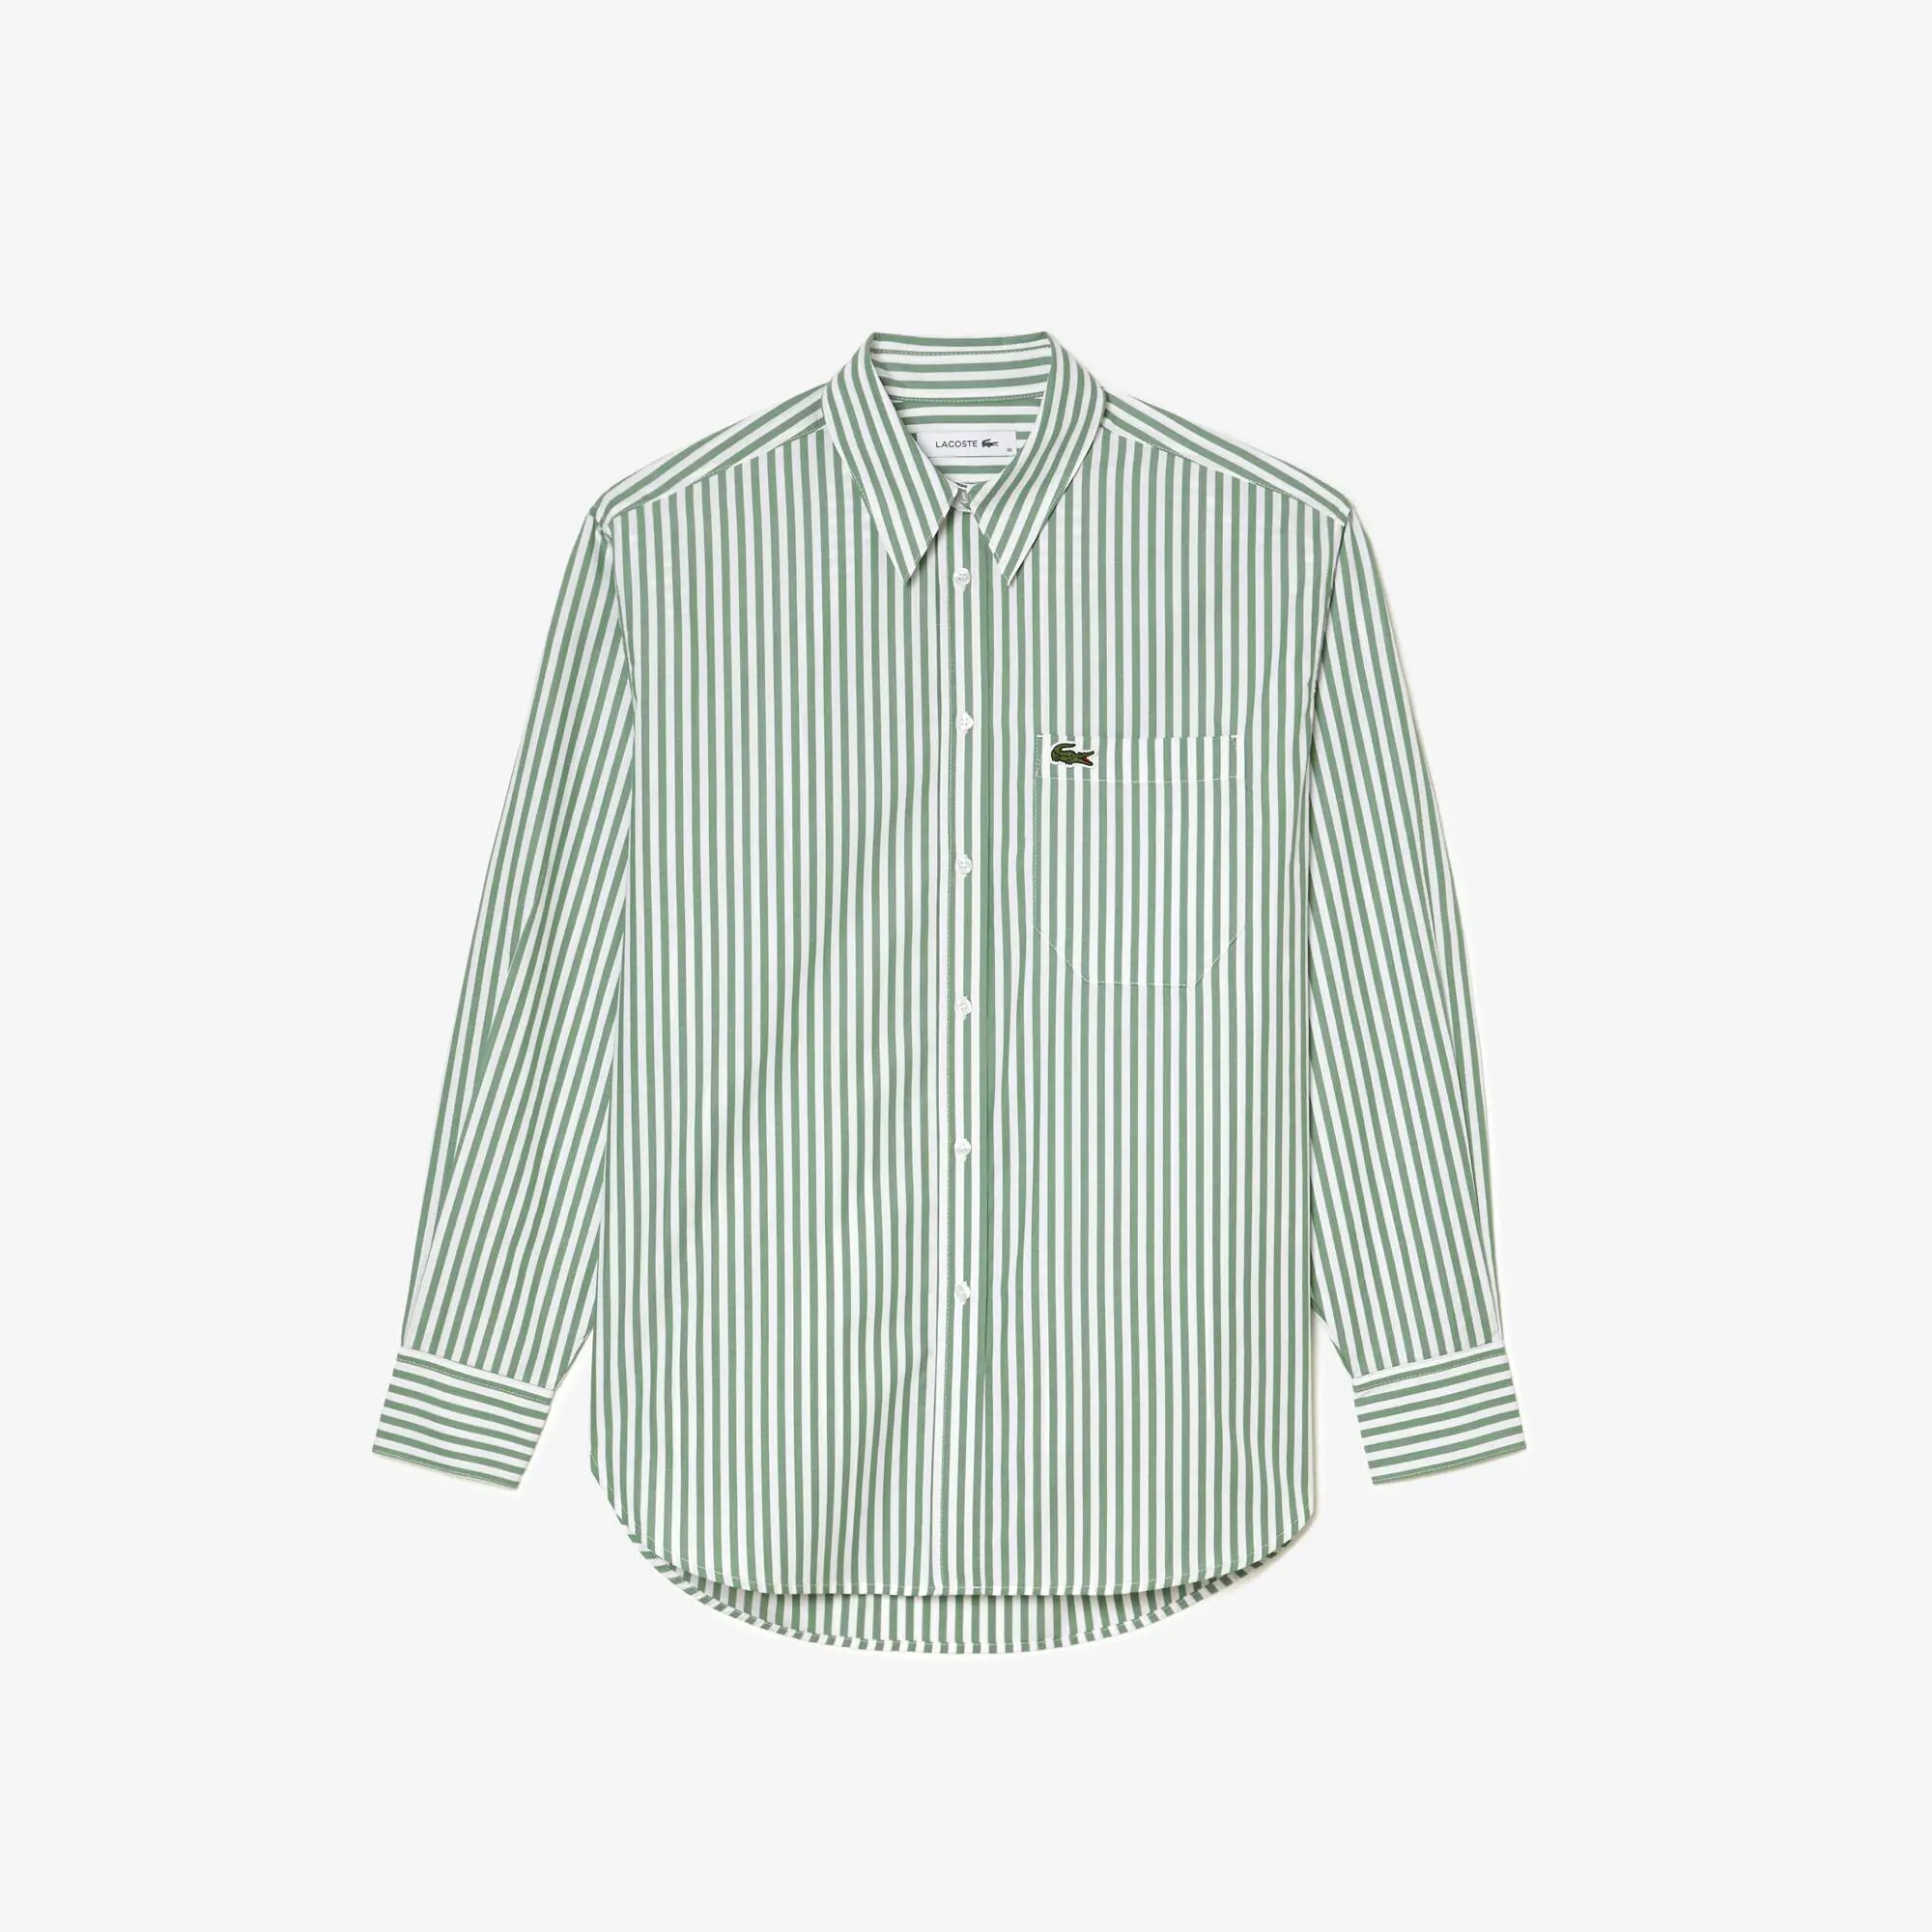 Lacoste Women’s Lacoste Striped Cotton Poplin Shirt. 2